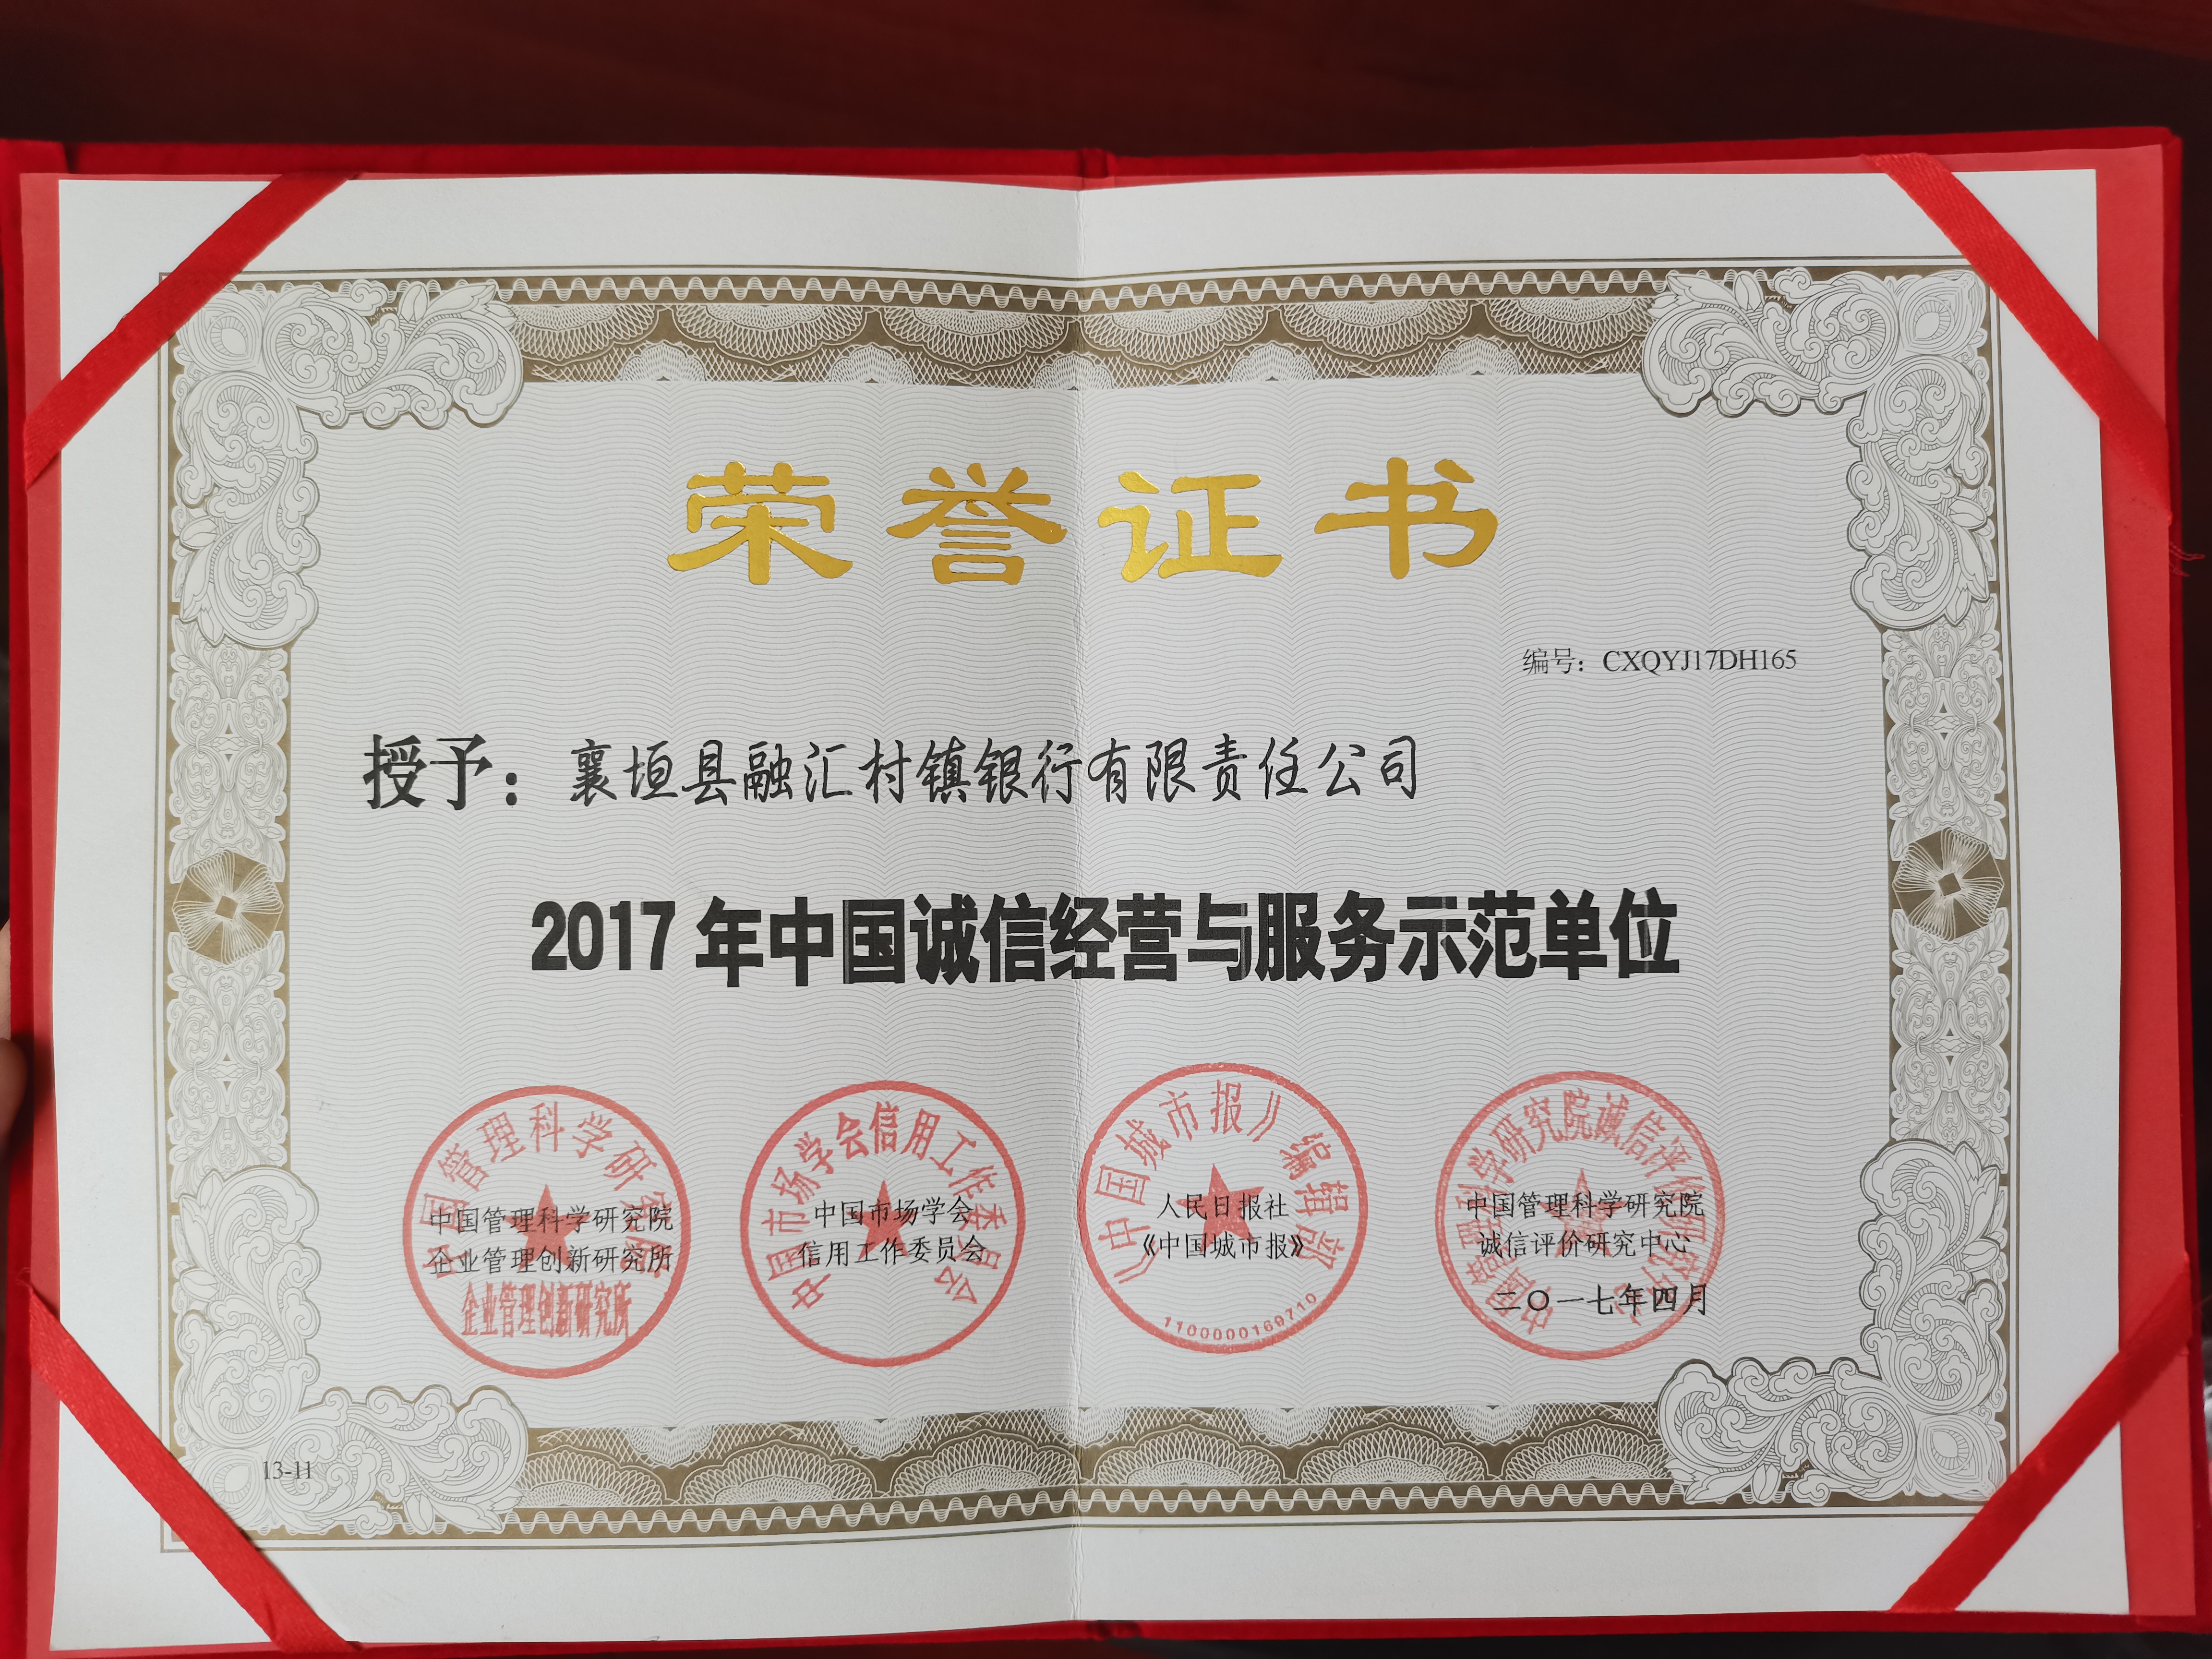 2017年4月 荣获2017年中国诚信经营与服务示范单位荣誉证书